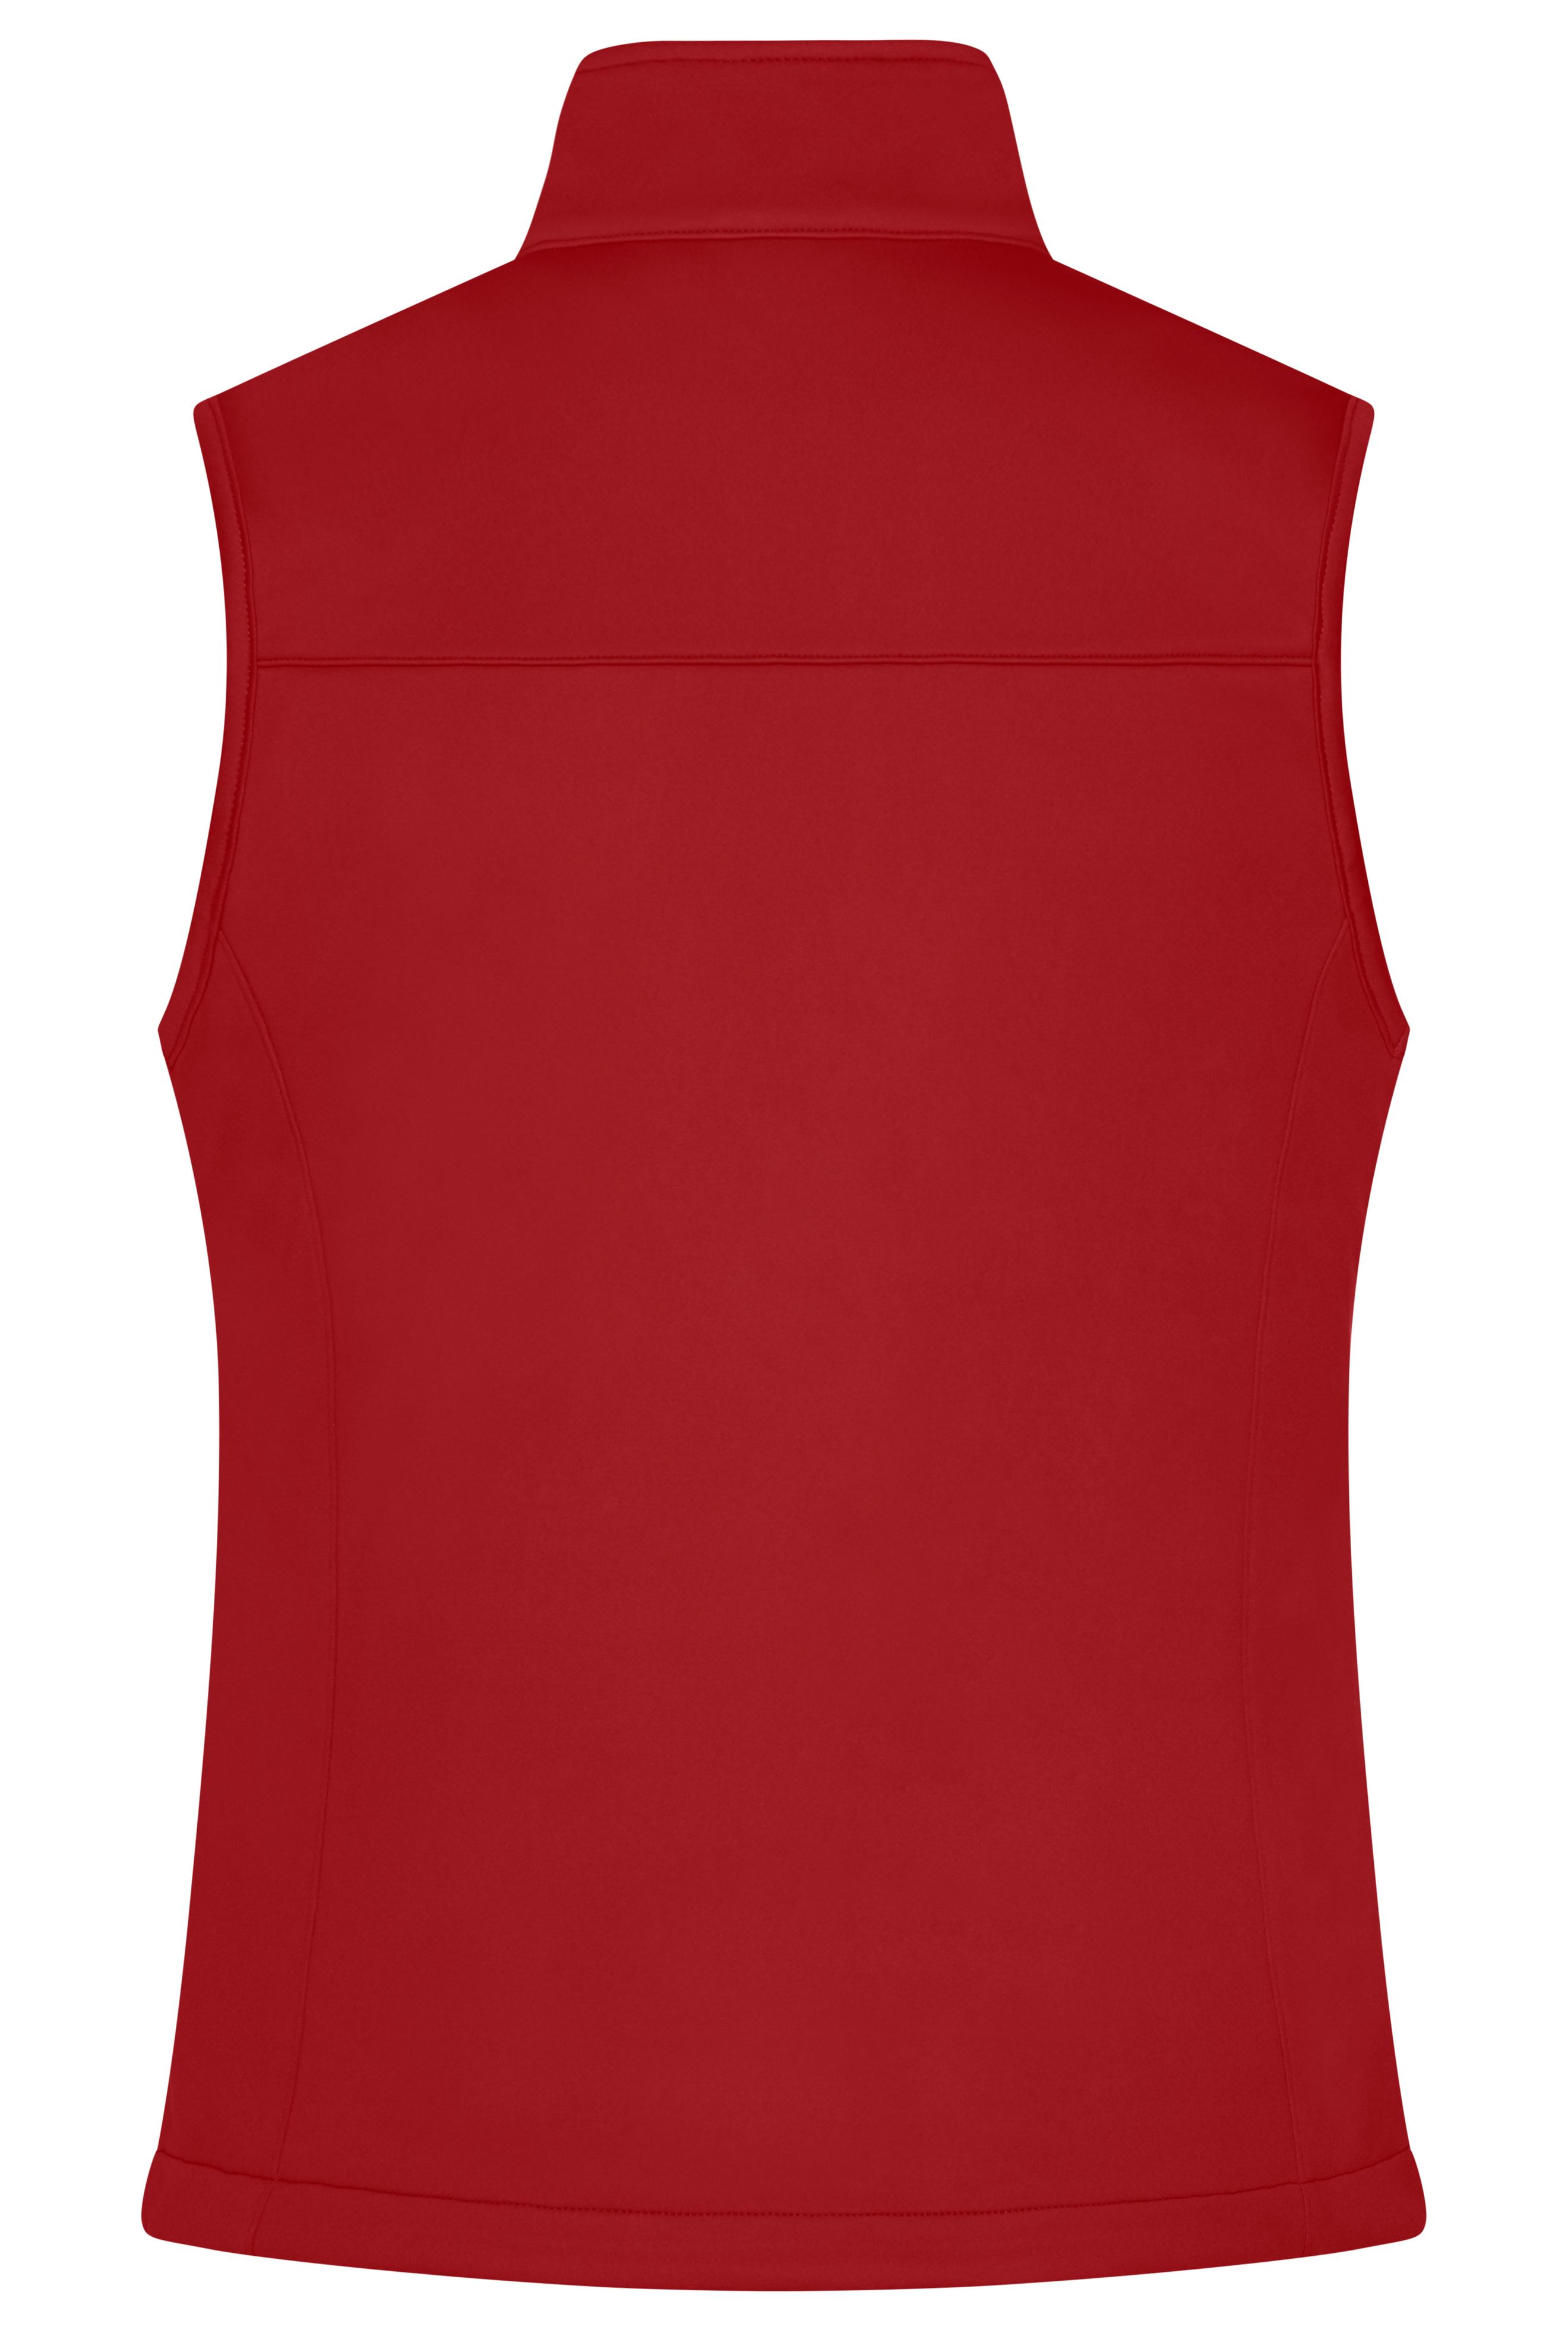 Ladies' Softshell Vest JN1169 Klassische Softshellweste im sportlichen Design aus recyceltem Polyester